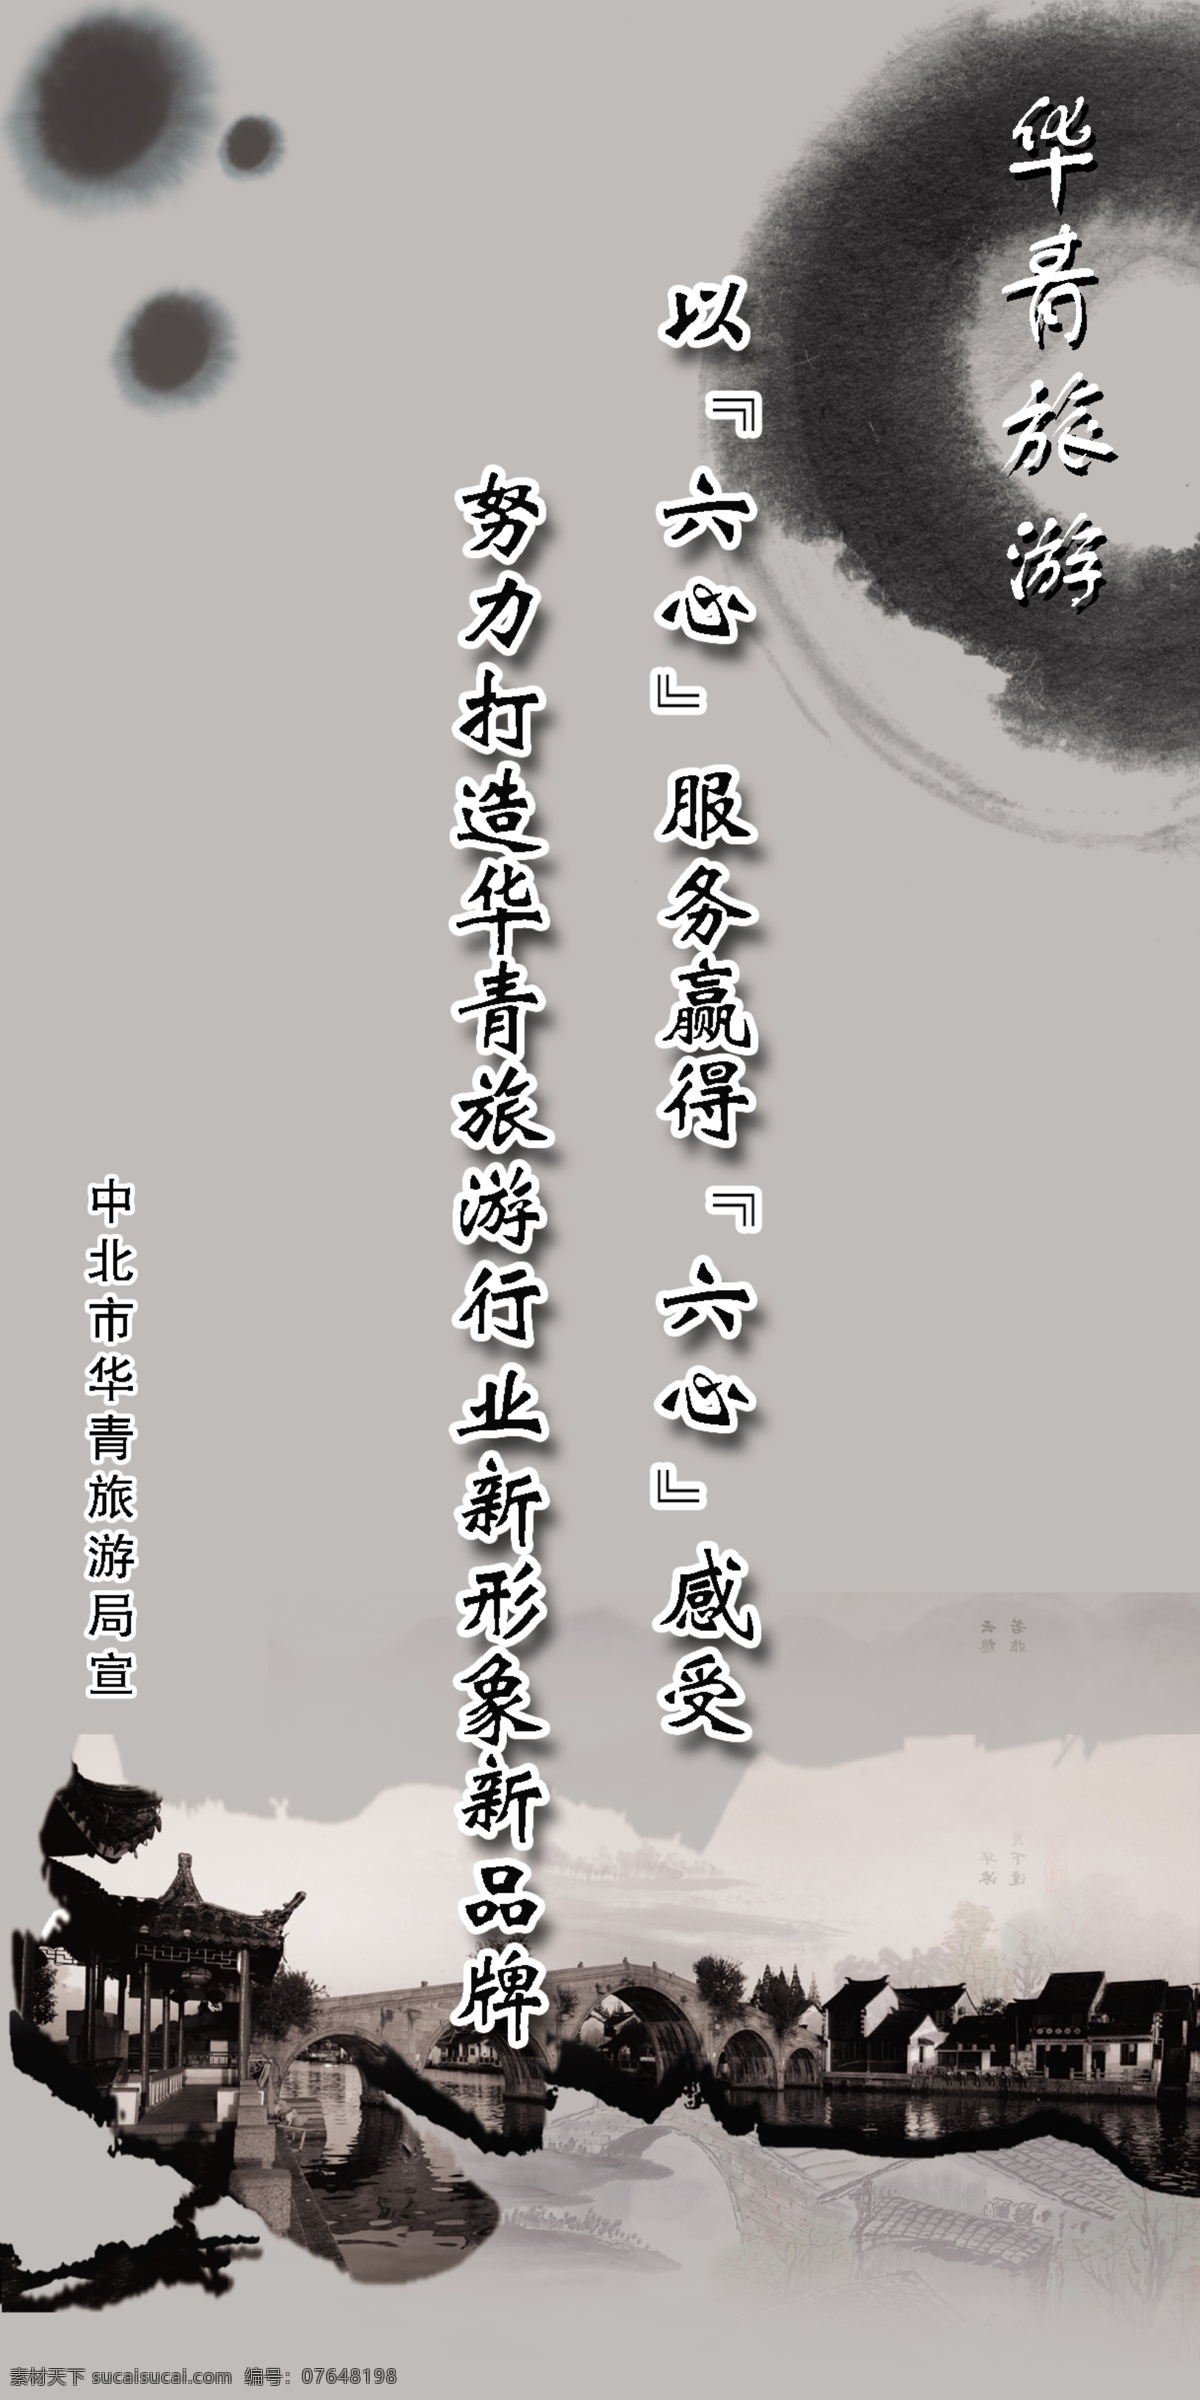 中国 风 水墨 展板 中国风 水墨画 古镇 古典 拱桥 老街 版面 底纹 回廊画 展板模板 广告设计模板 源文件